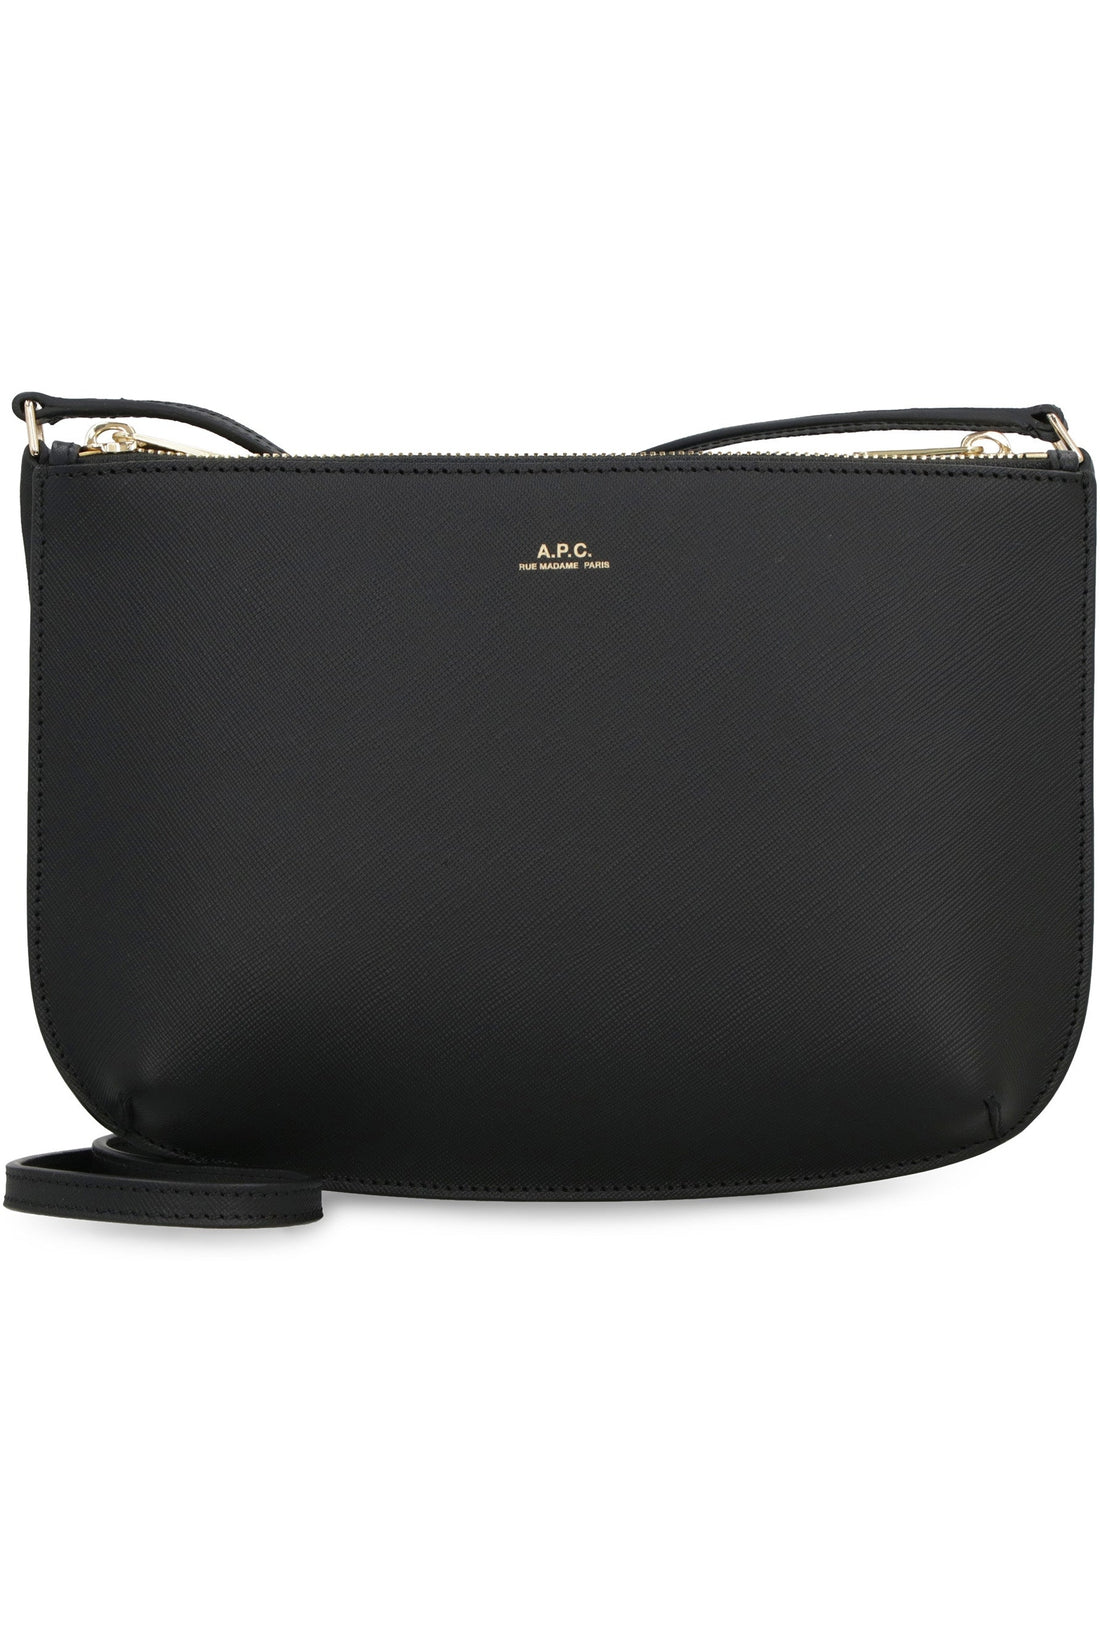 A.P.C.-OUTLET-SALE-Sarah leather crossbody bag-ARCHIVIST